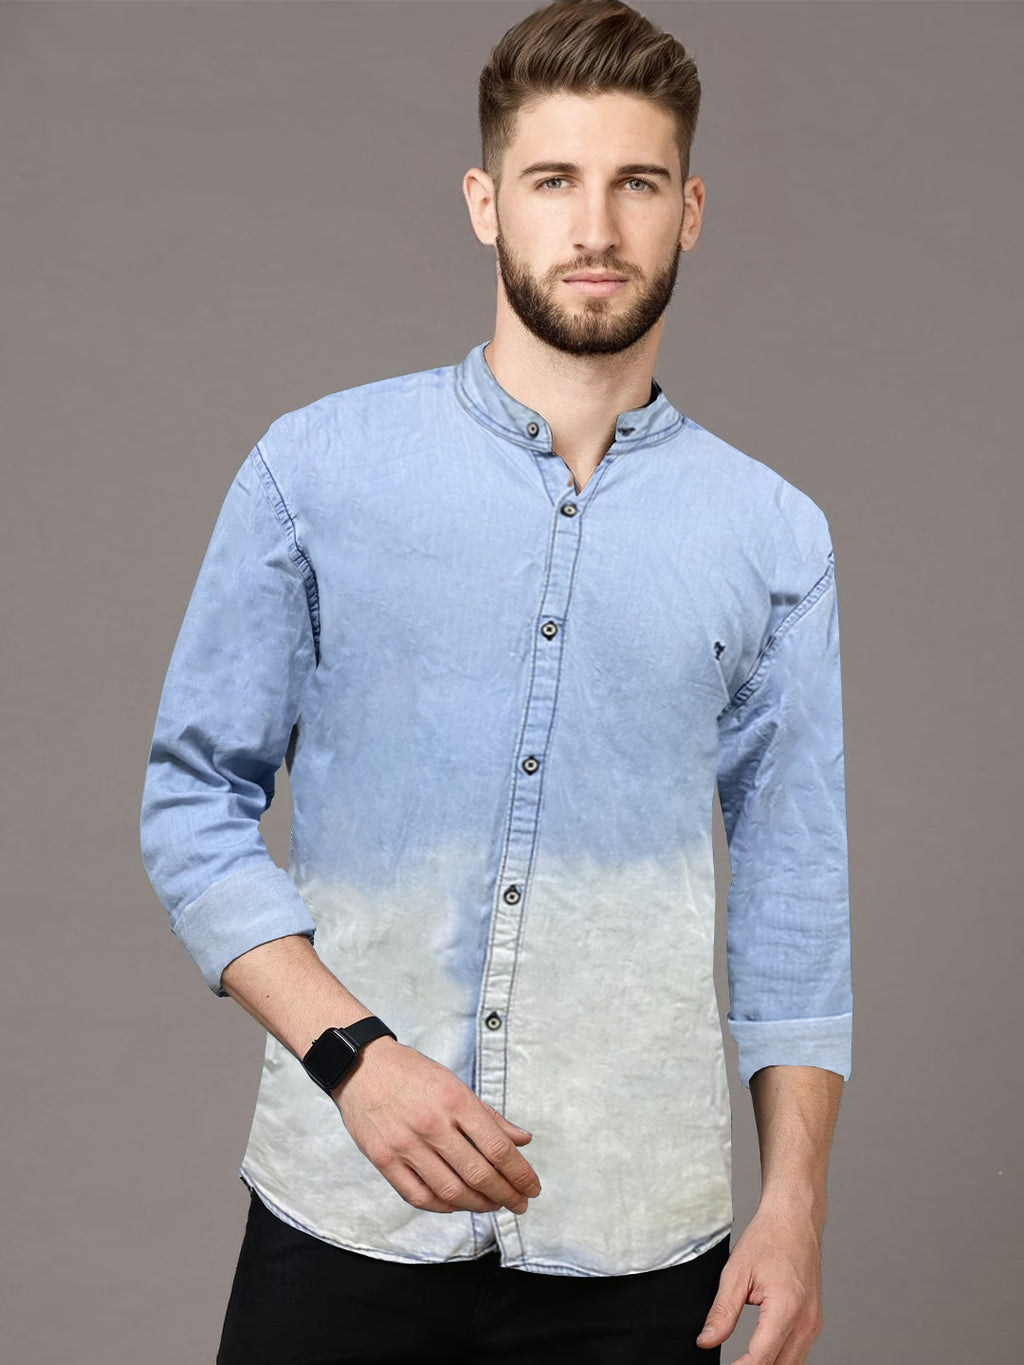 Buy Highlander Blue Slim Fit Solid Casual Shirt for Men Online at Rs.539 -  Ketch